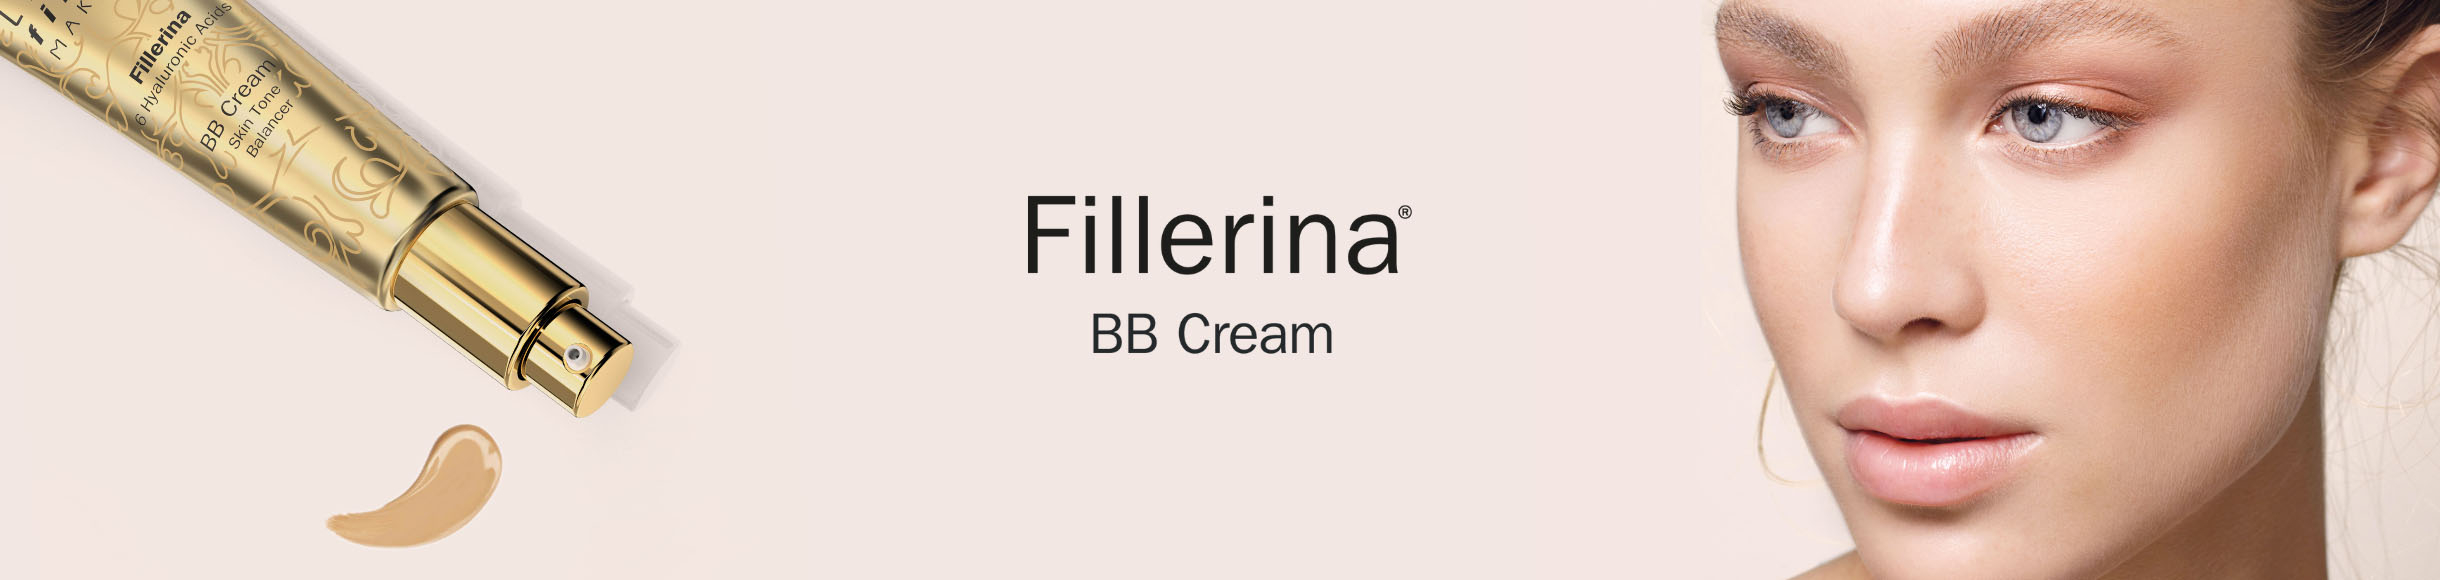 Fillerina BB Cream